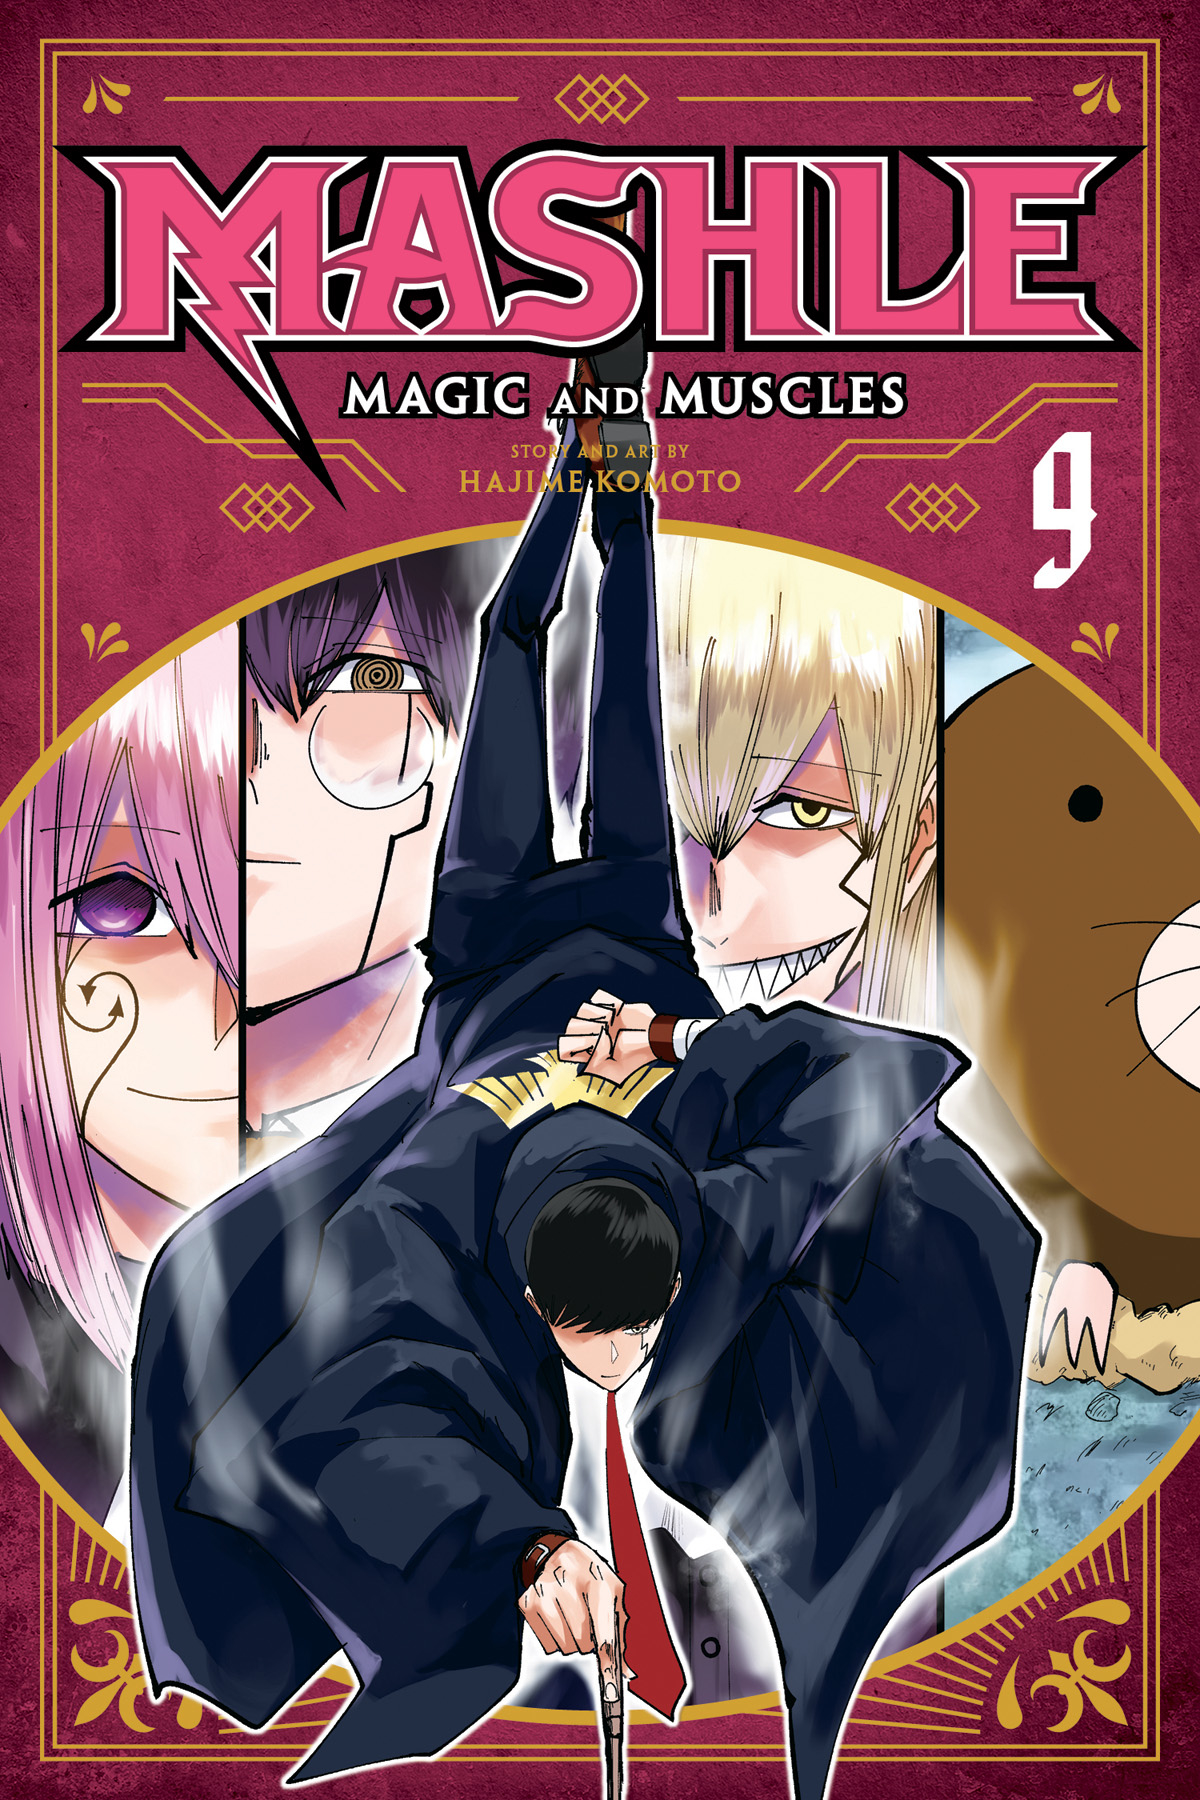 Mashle Magic & Muscles Manga Volume 9